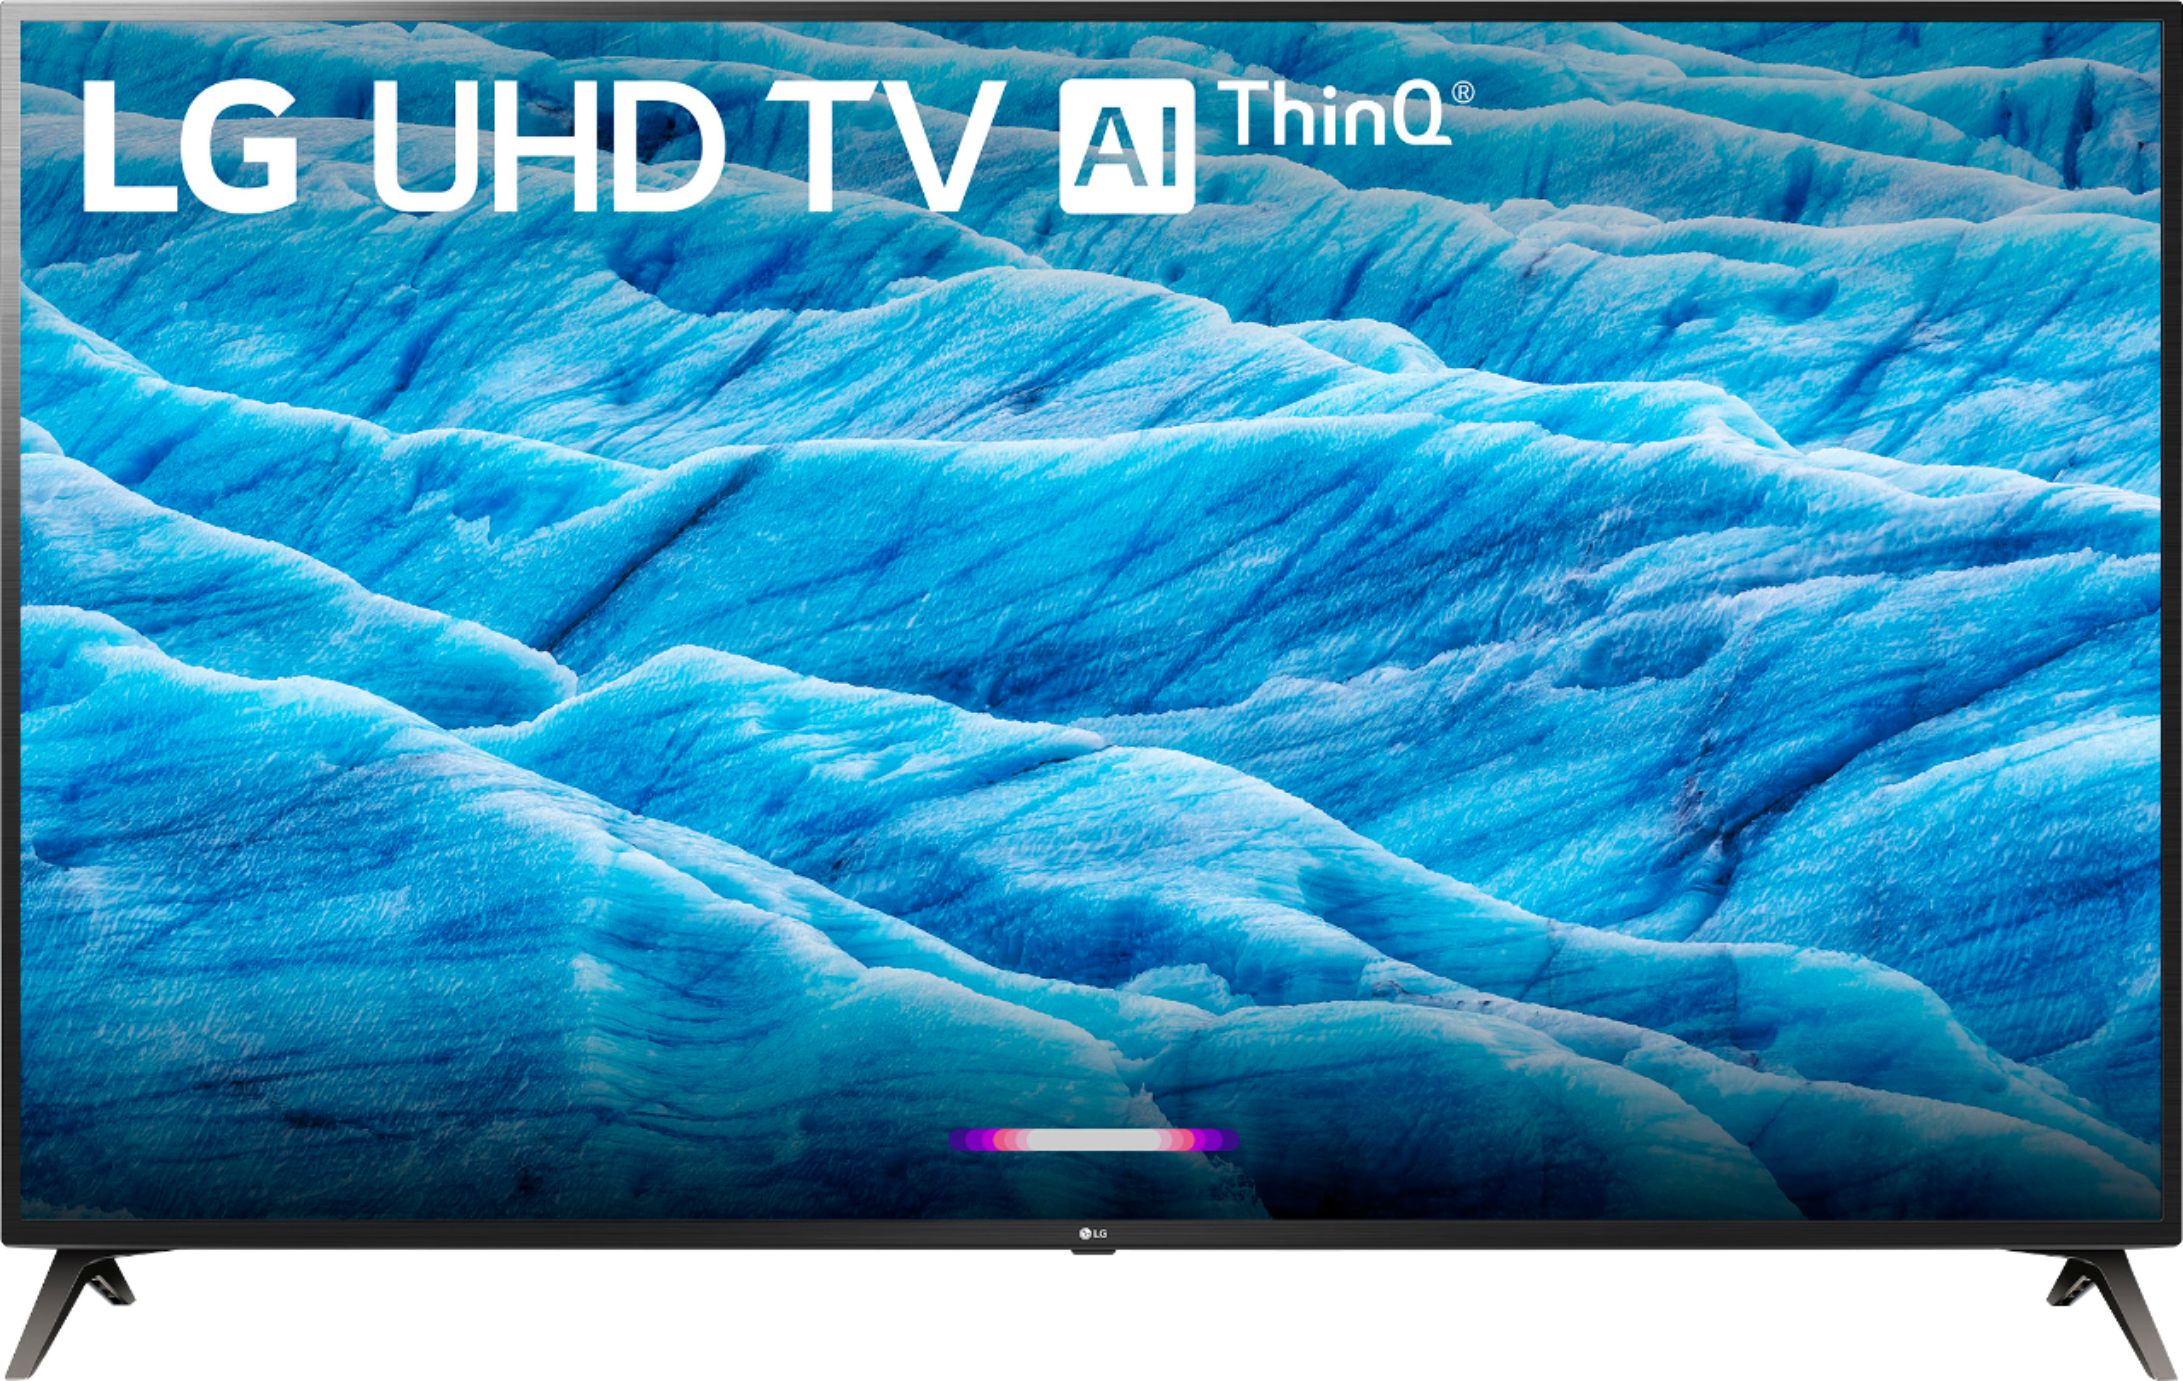 Televisor LG LED Smart TV 70 Ultra HD 4K ThinQ AI 70UR8750PSA +